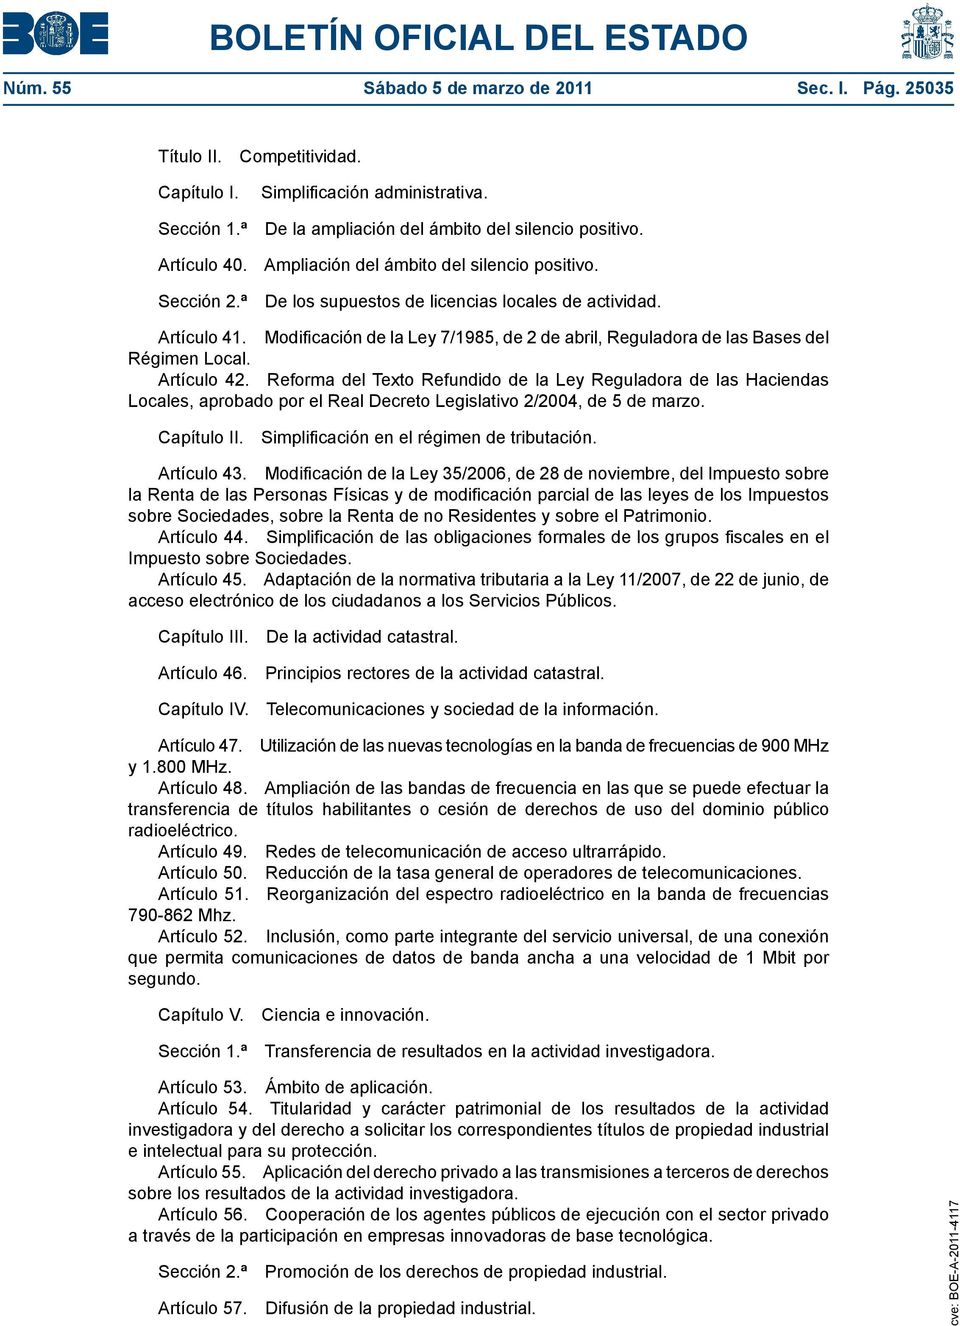 Modificación de la Ley 7/1985, de 2 de abril, Reguladora de las Bases del Régimen Local. Artículo 42.